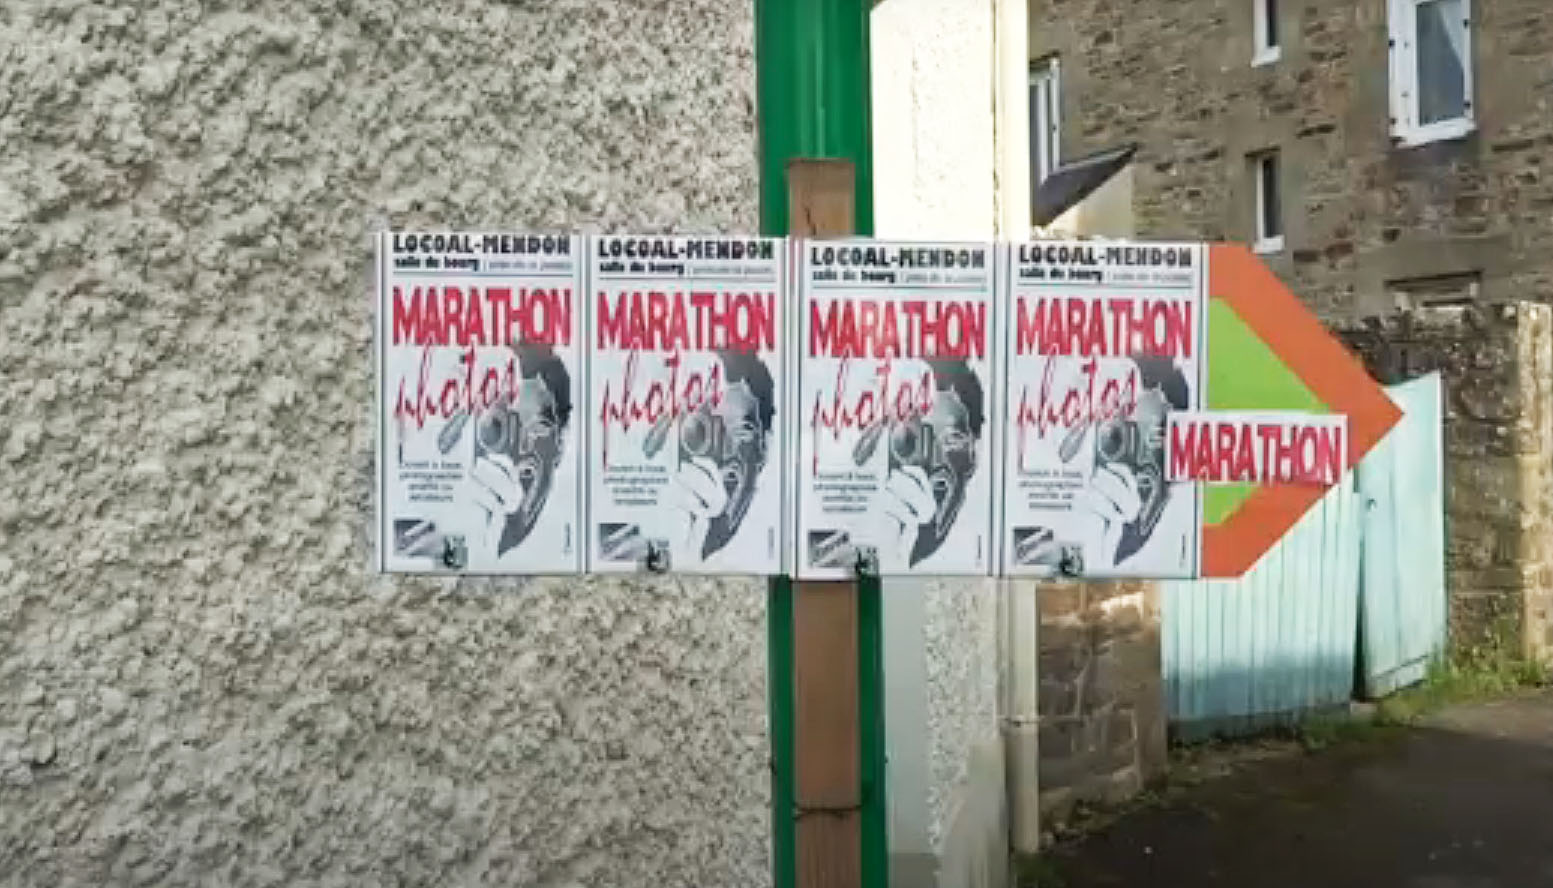 You are currently viewing – Bientôt, le 4ième marathon-photo à Locoal-Mendon